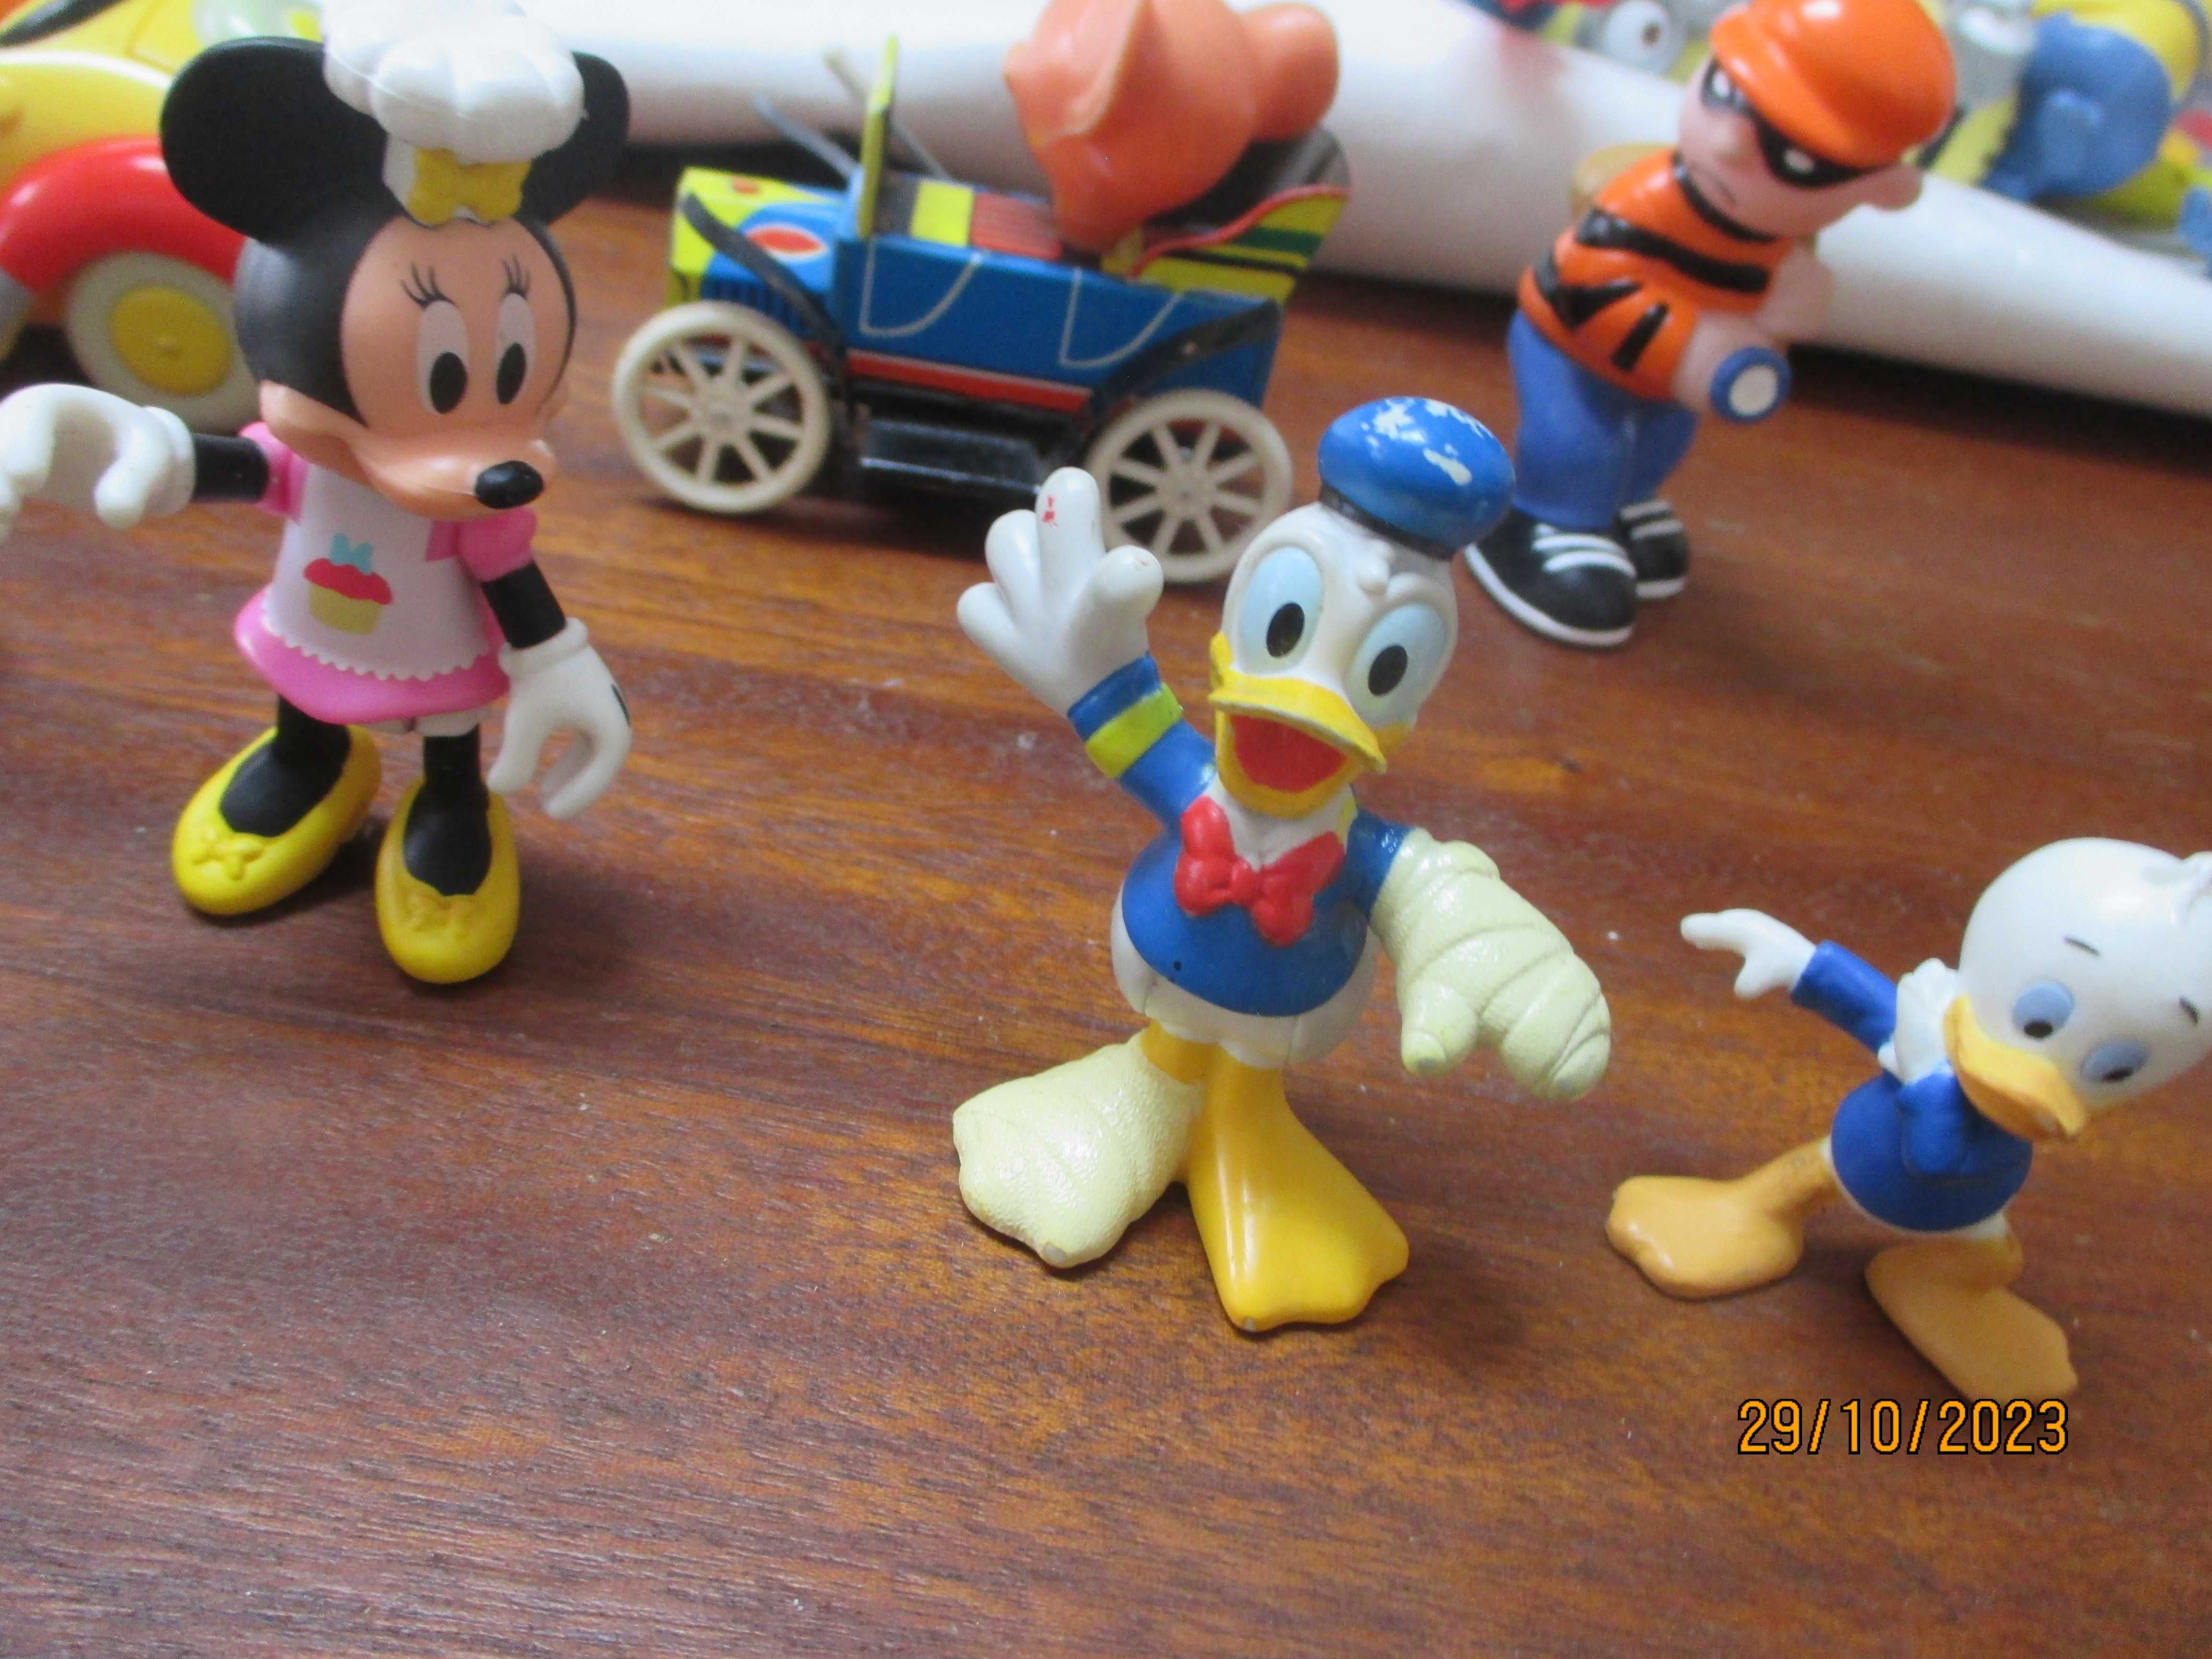 Donald, Minnie, Tartarugas ninja e outros em bonecos pvc